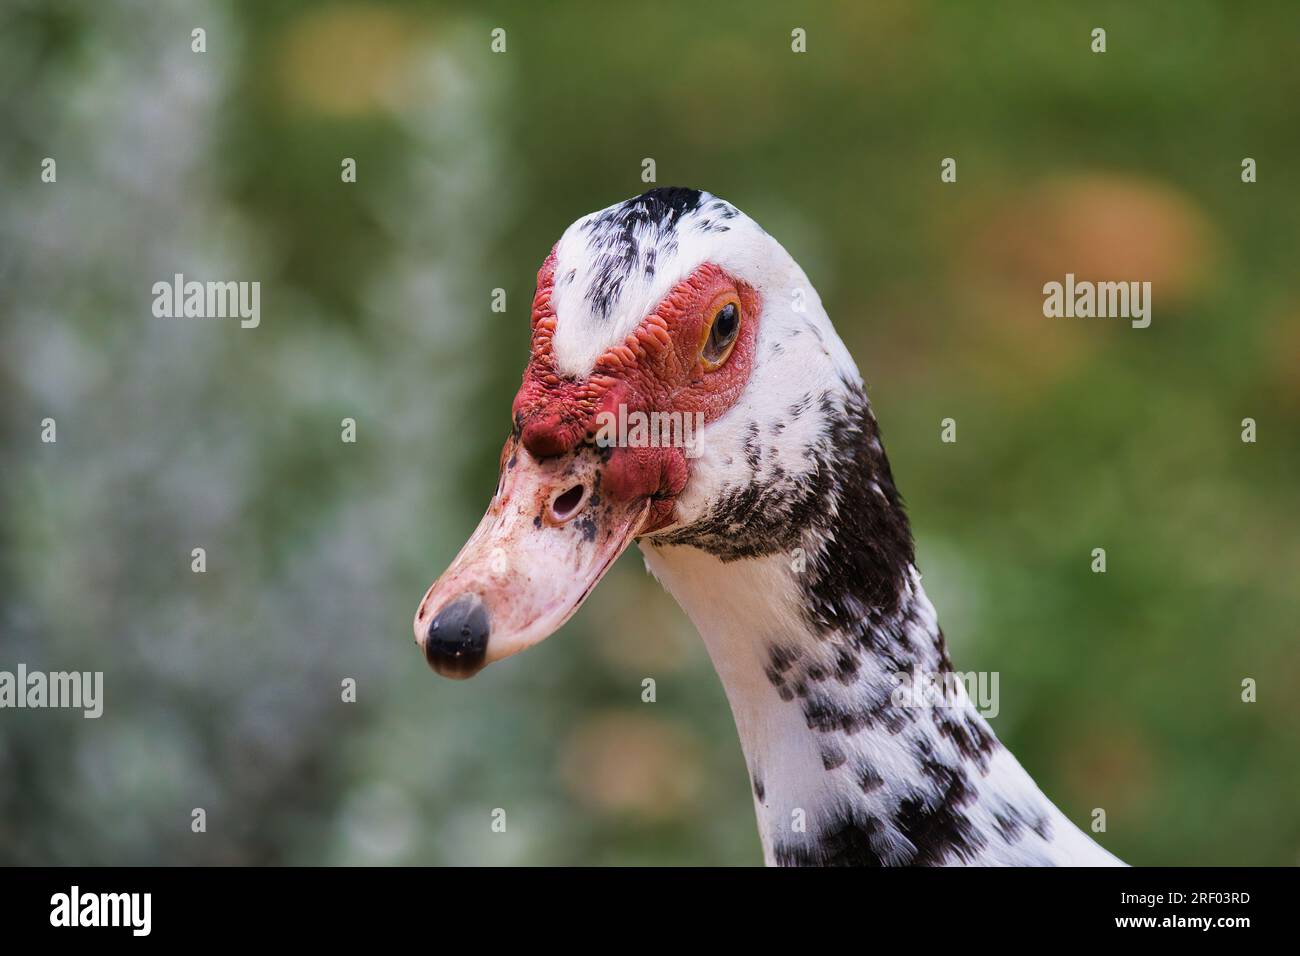 Vue en gros plan d'un canard de muscovy blanc, rouge et noir. Banque D'Images